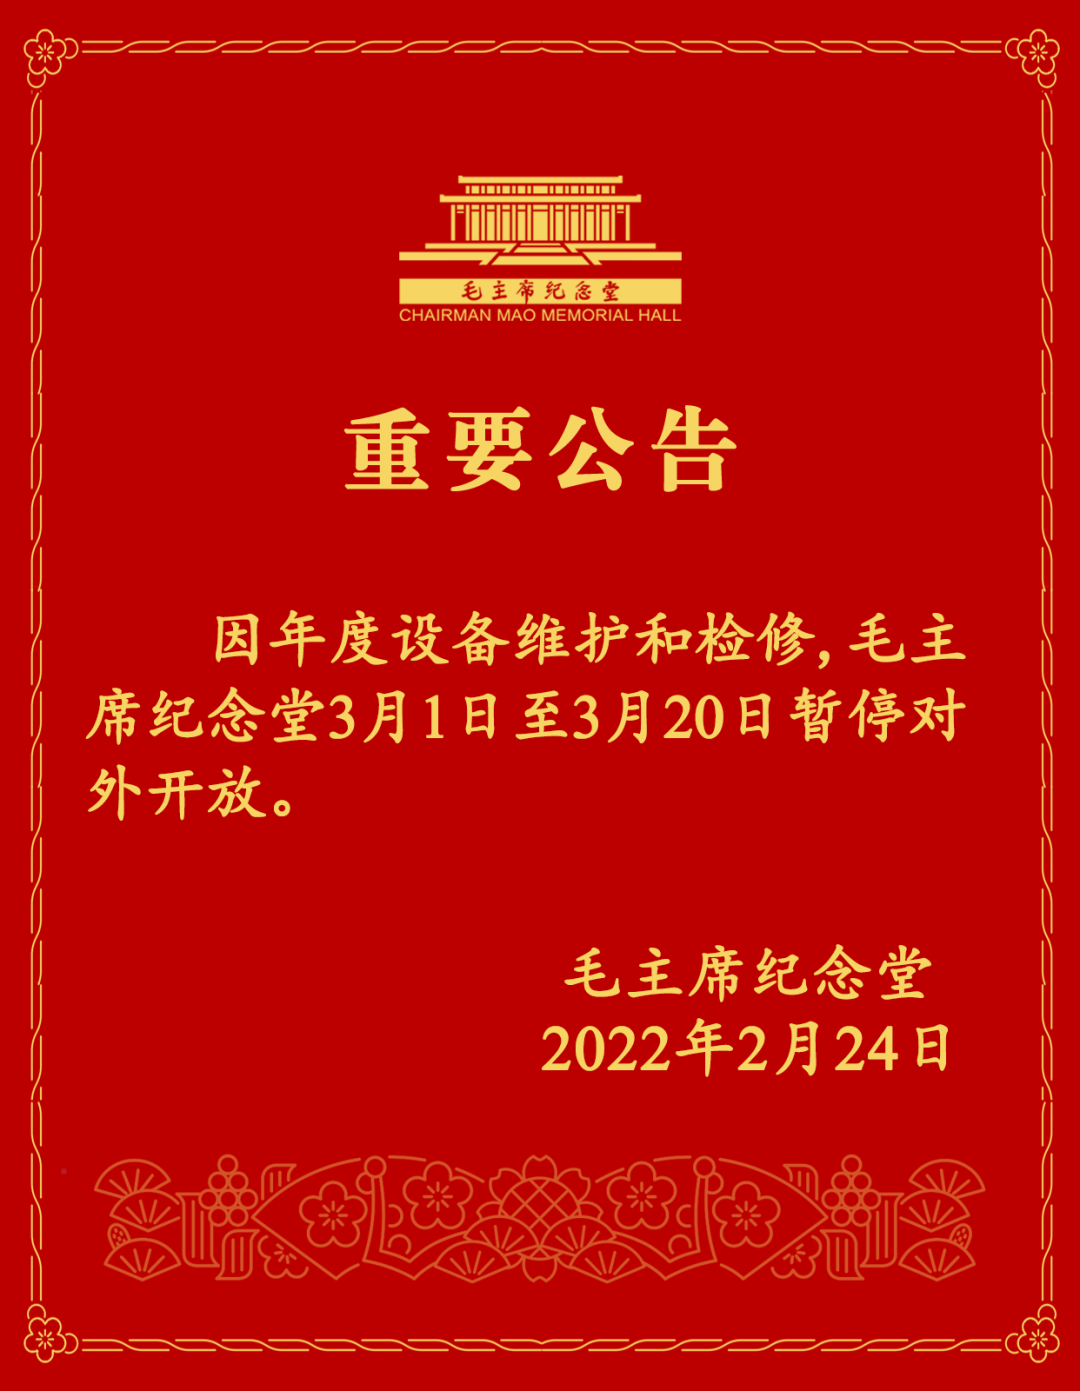 《【恒达app注册】3月1日至20日，毛主席纪念堂暂停对外开放》